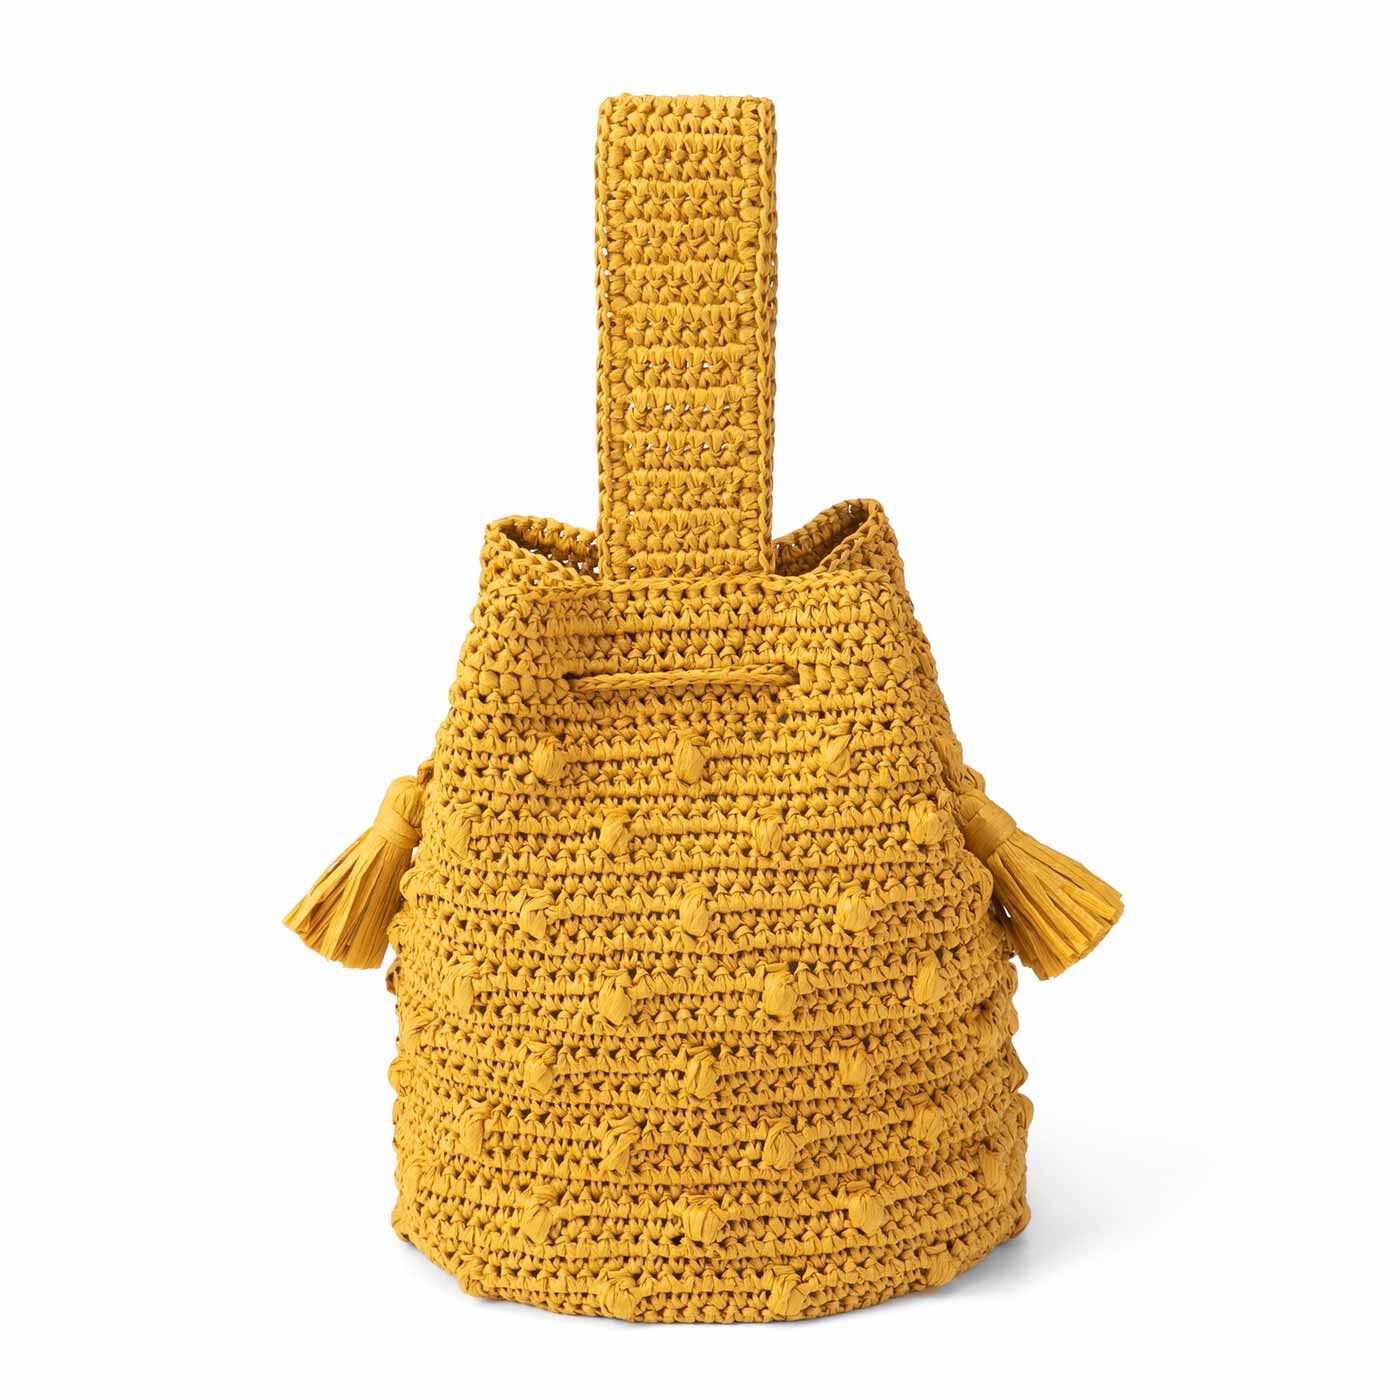 クチュリエ|軽くて丈夫なマニラヘンプヤーンで編む かぎ針編みバッグの会|2-wayバケツ型バッグ